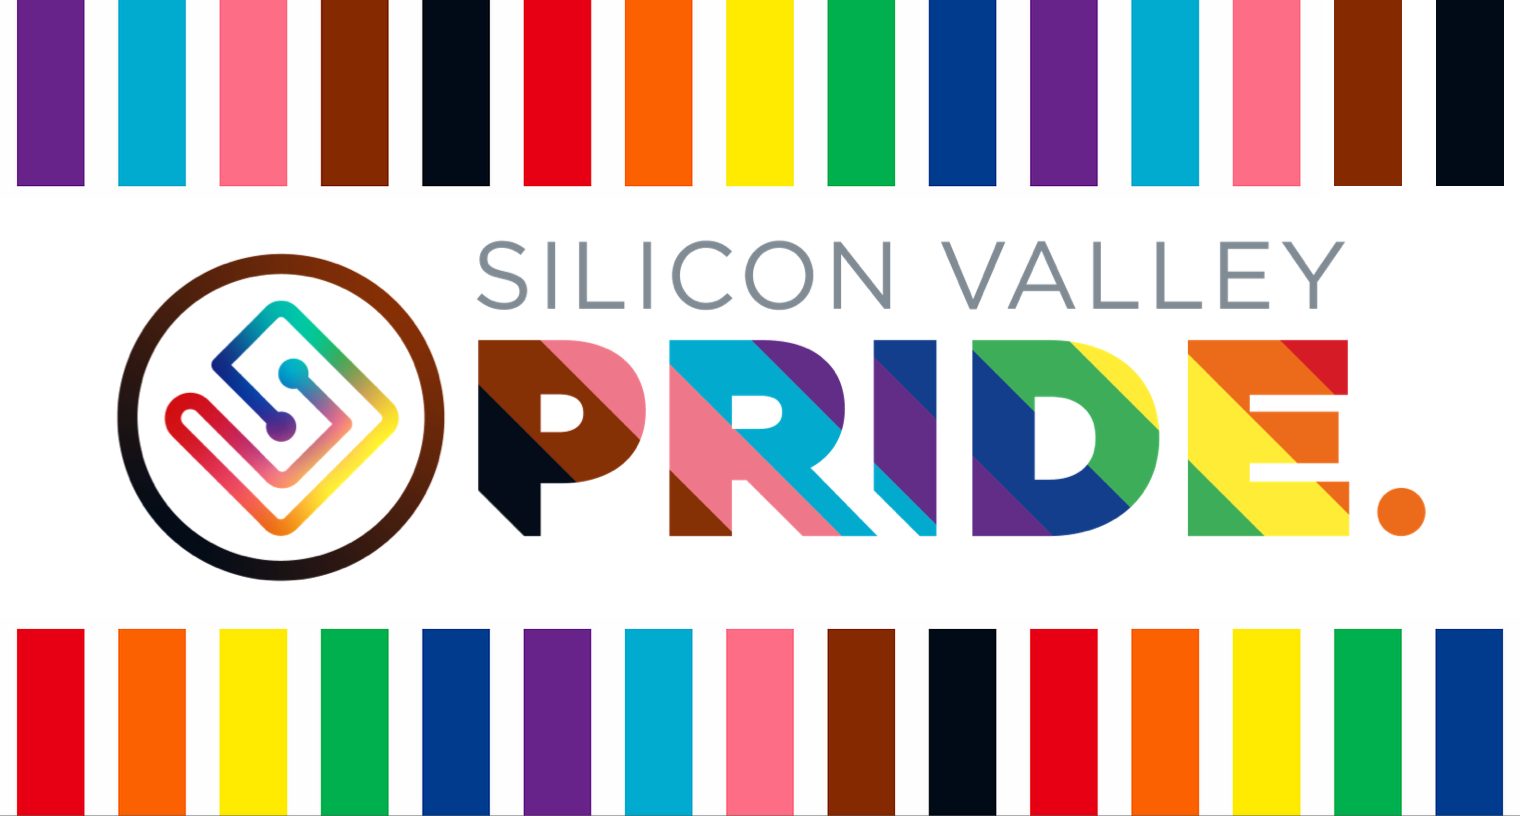 Silicon Valley Pride 2021